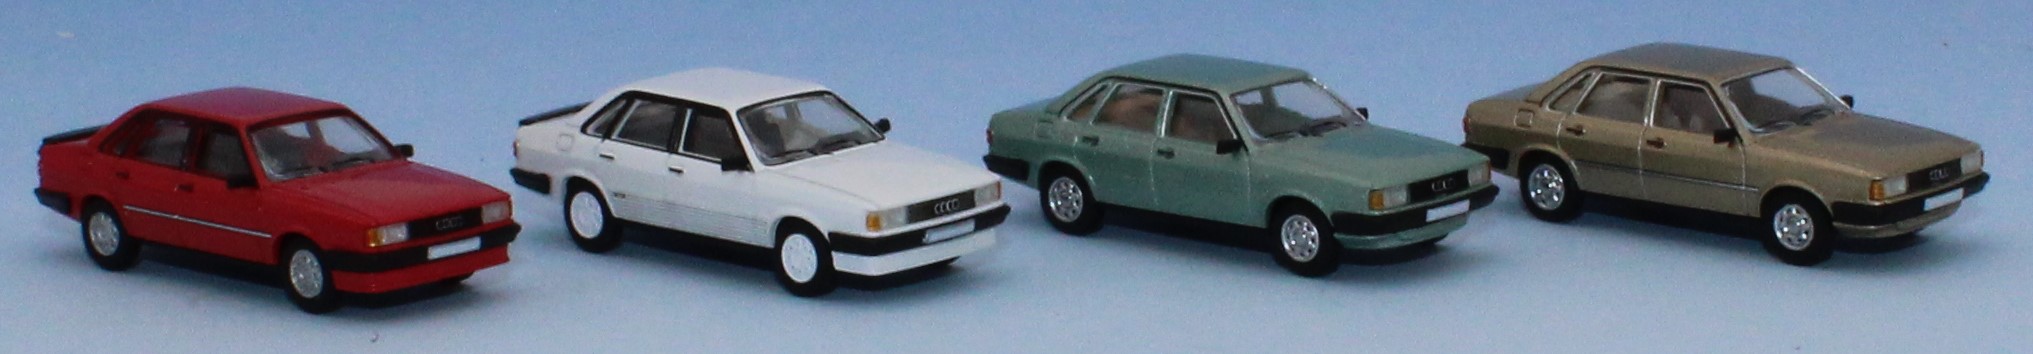 Audi 80 (B2) (1978 - 1984)